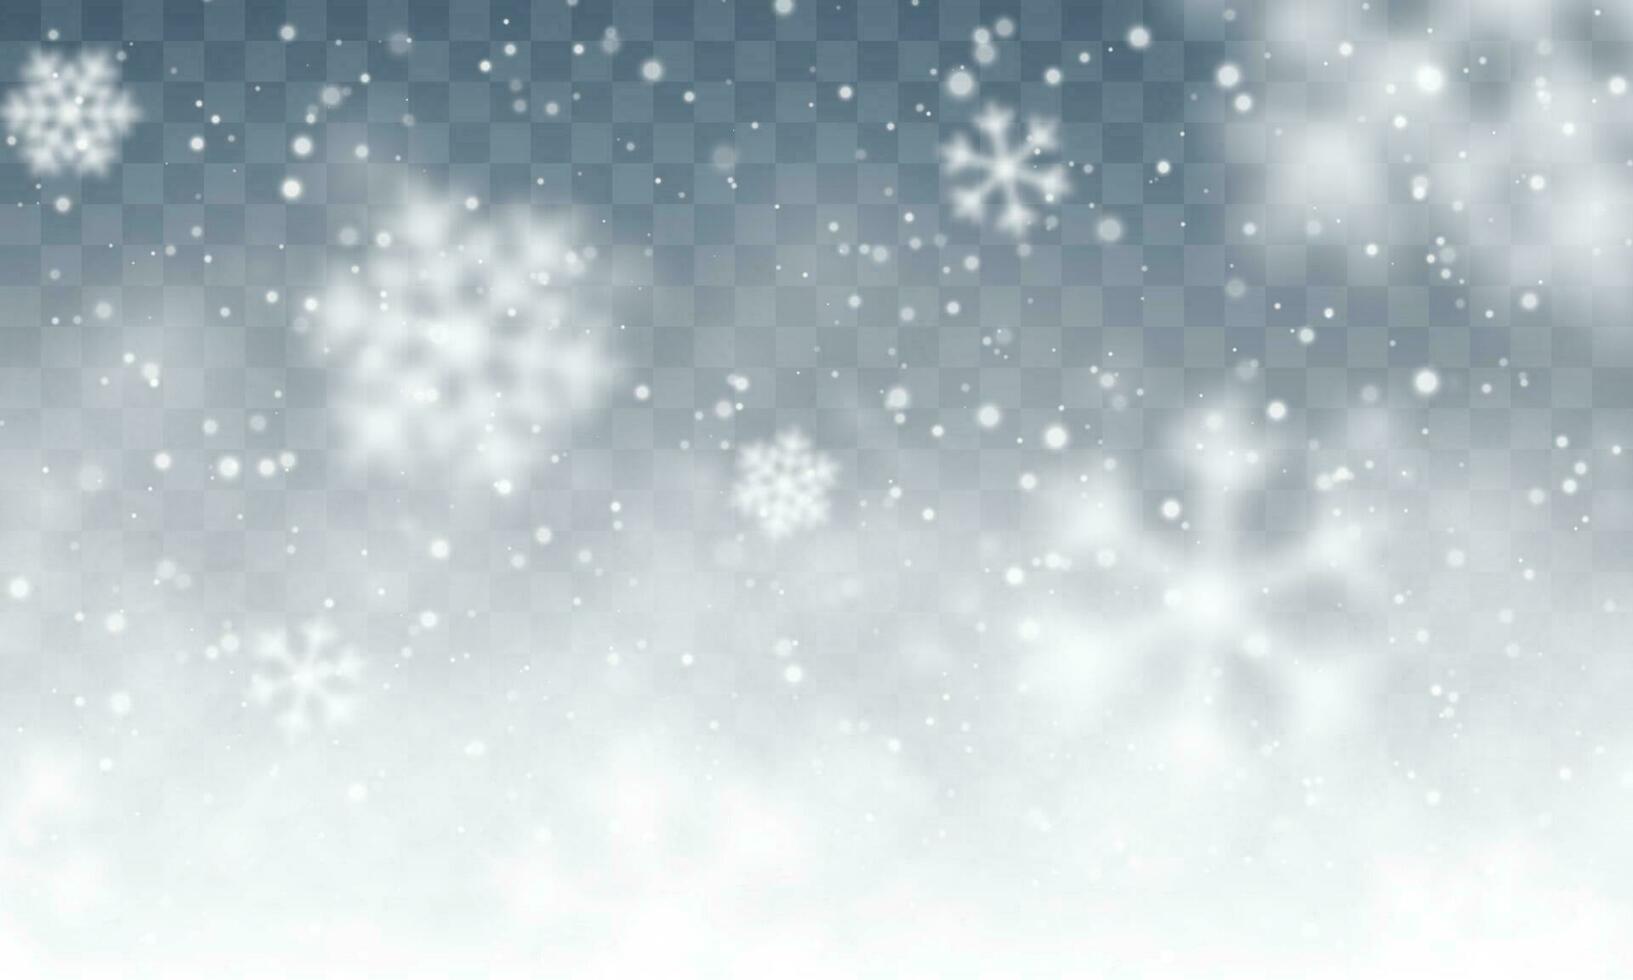 Weihnachten Schnee. fallen Schneeflocken auf dunkel Blau Hintergrund. Schneefall. Vektor Illustration